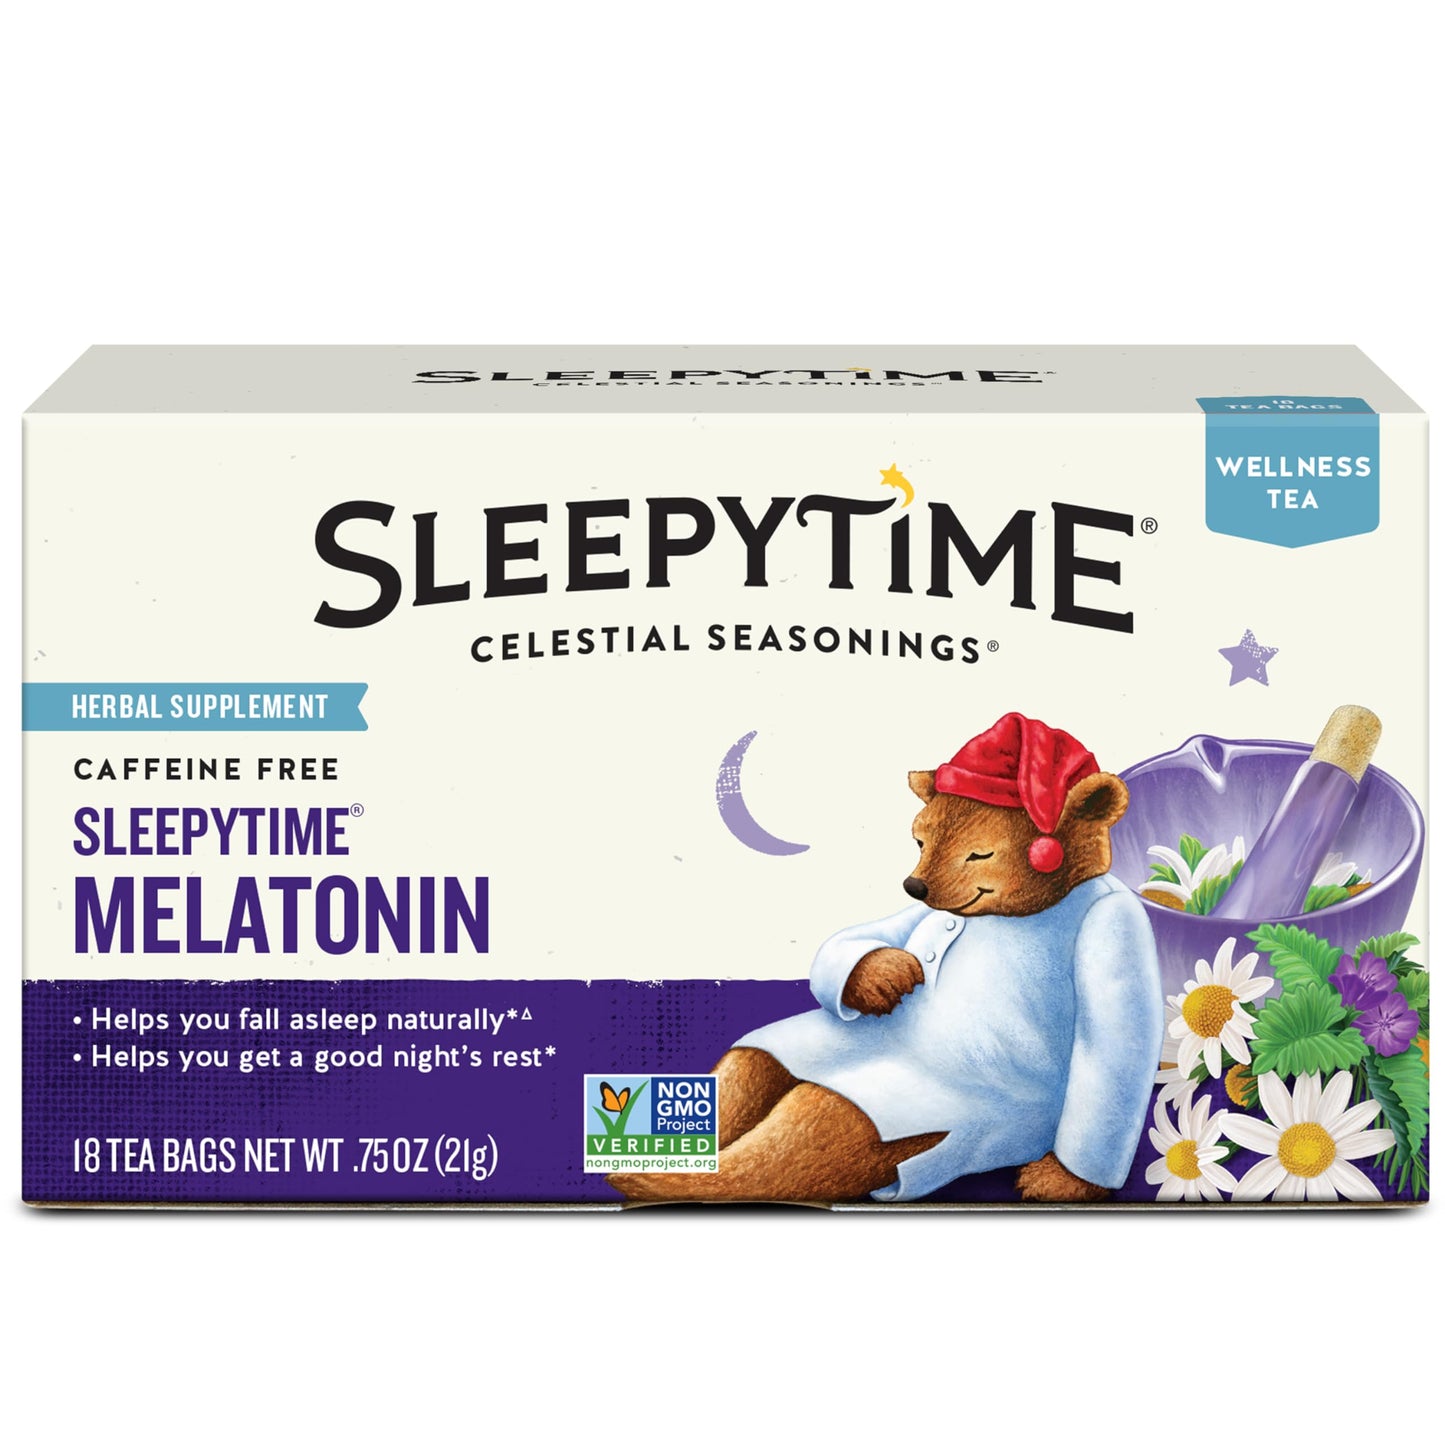 Celestial Seasonings Sleepytime Melatonin